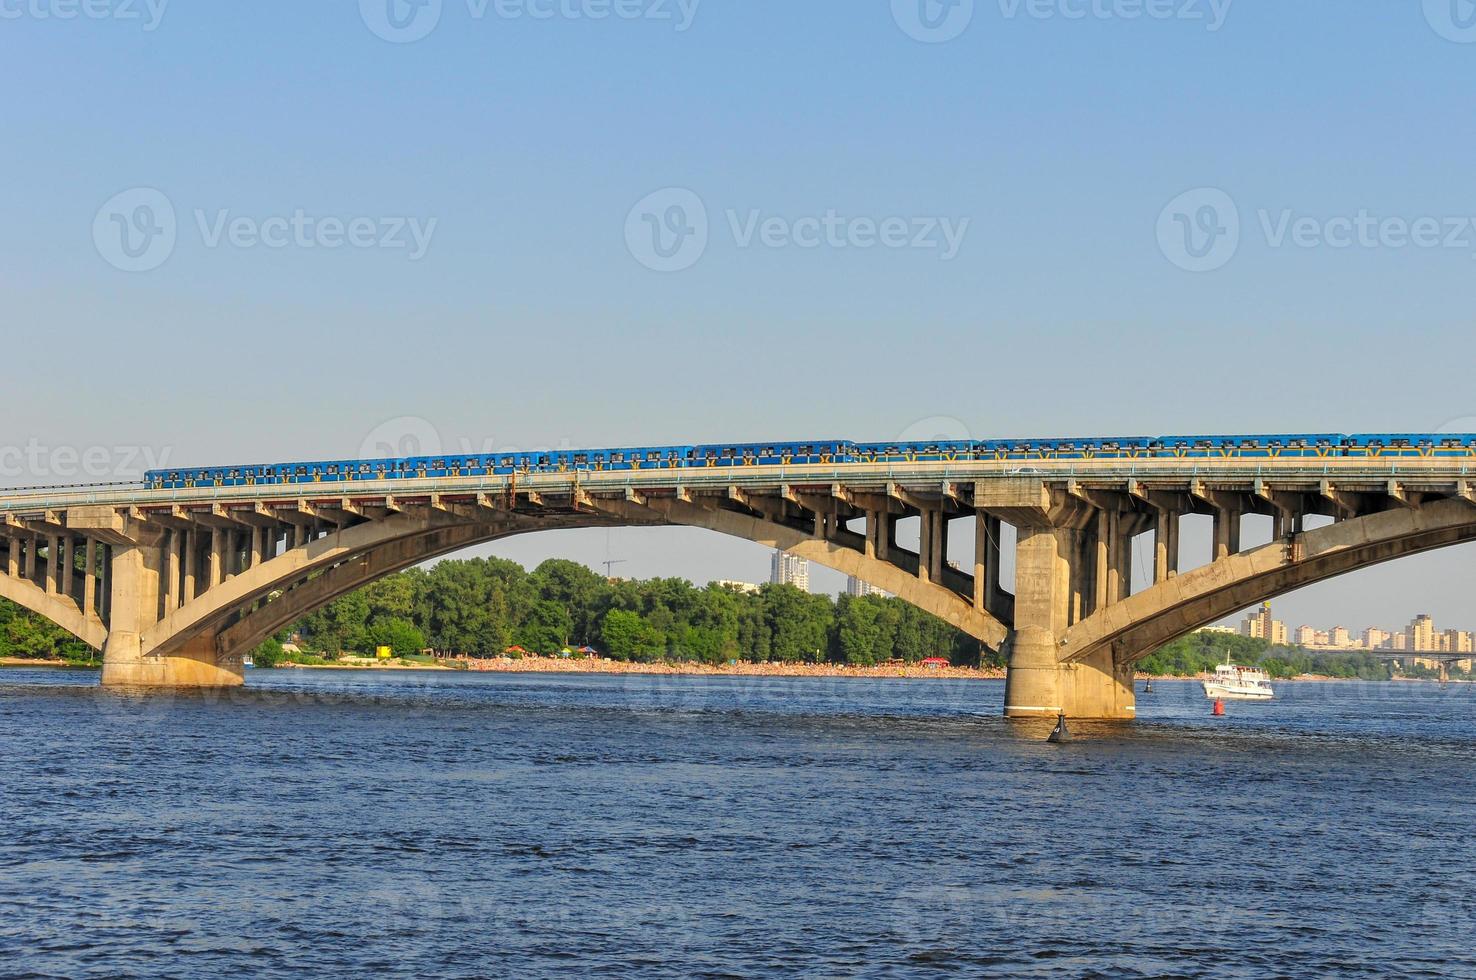 u-bahnbrücke - kiew, ukraine foto